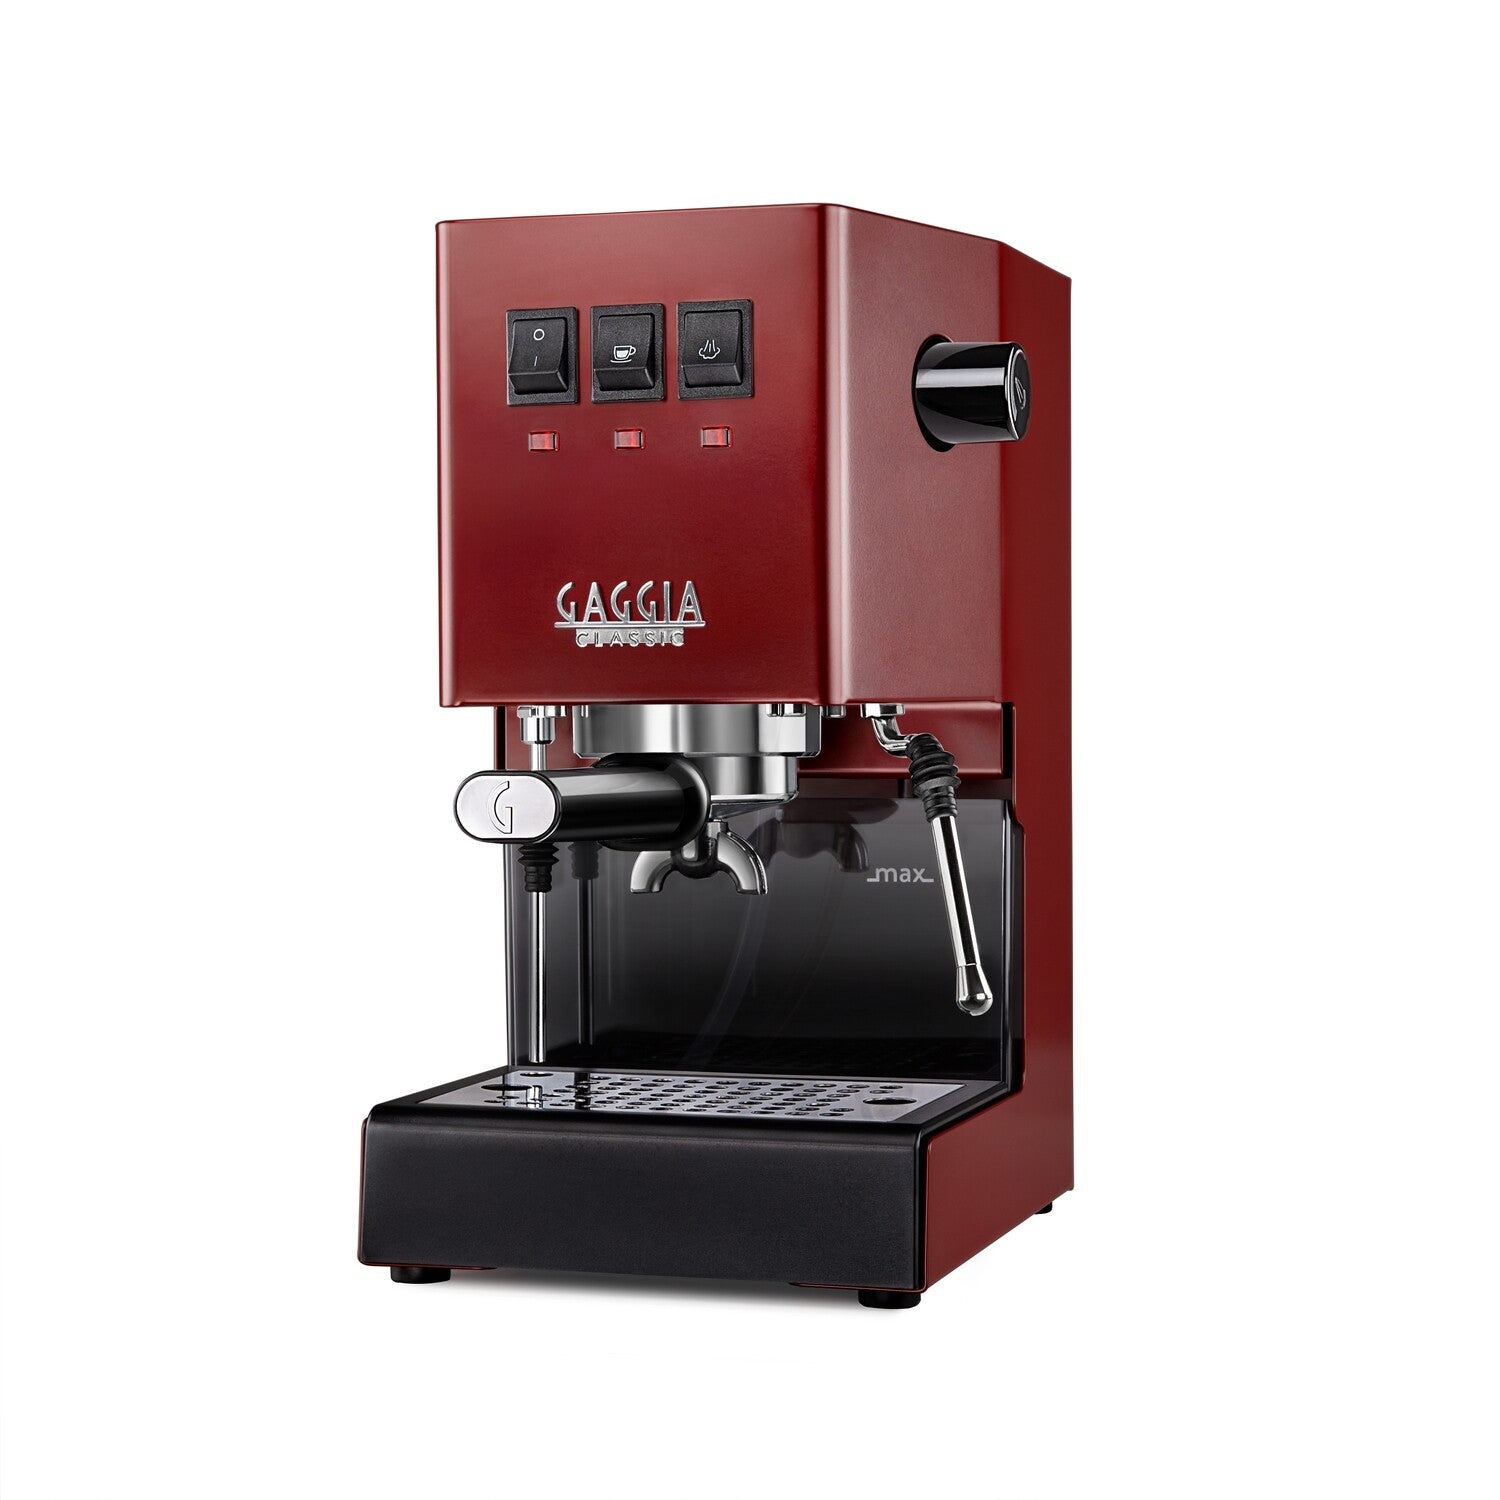 Gaggia Classic 2019 COLOR - Cherry RED 240V | Manual Espresso Coffee Machine